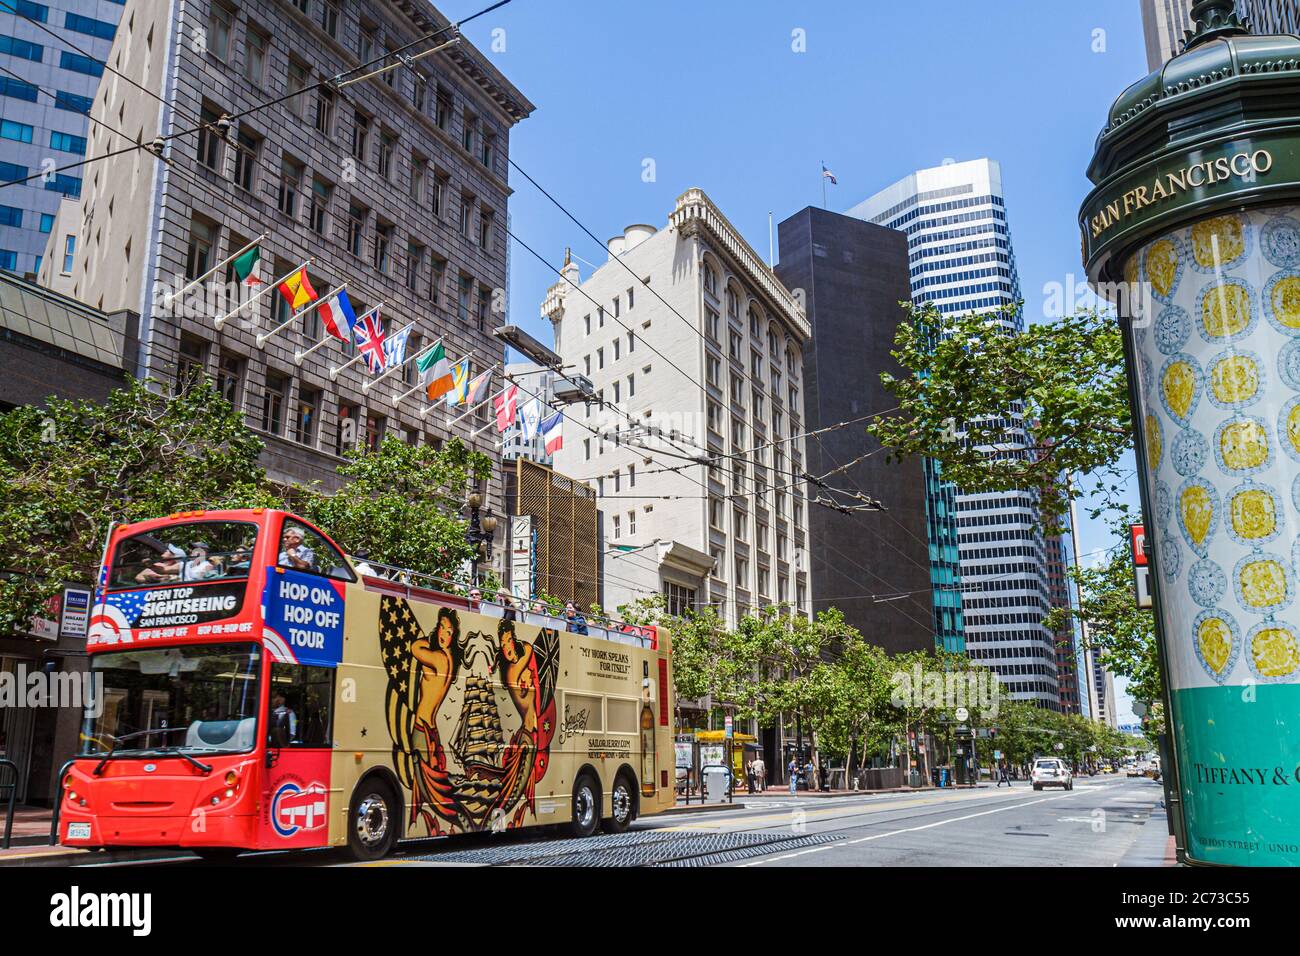 San Francisco California, Market Street, centro, strada scena, edificio autobus a due piani tour, pullman, bandiere, chiosco ad, Tiffany, strada lunga, alto livello Foto Stock